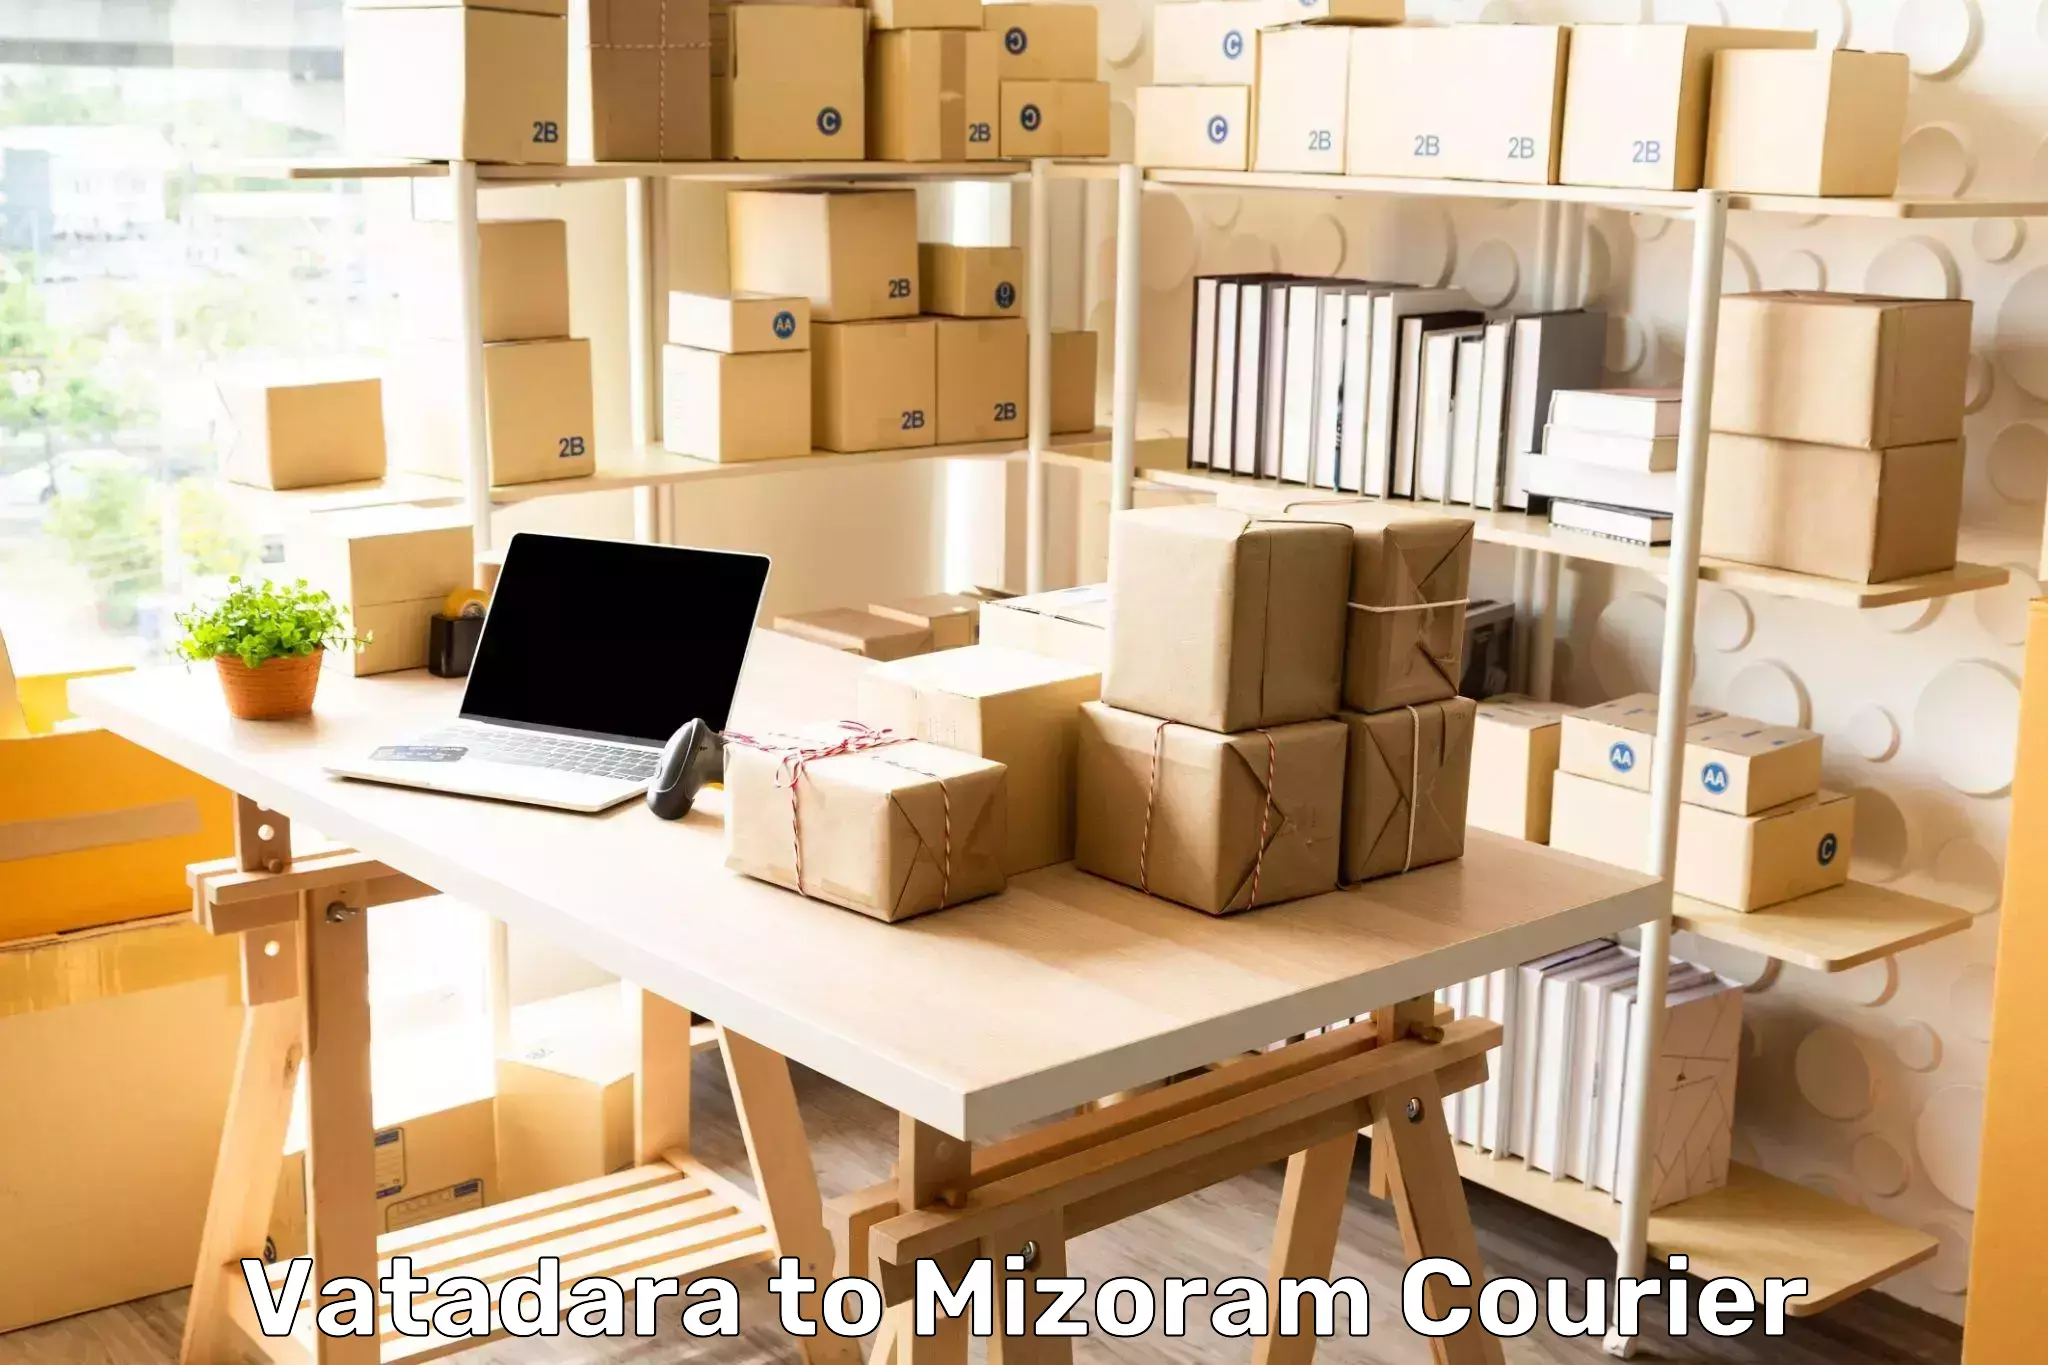 Retail shipping solutions Vatadara to Darlawn